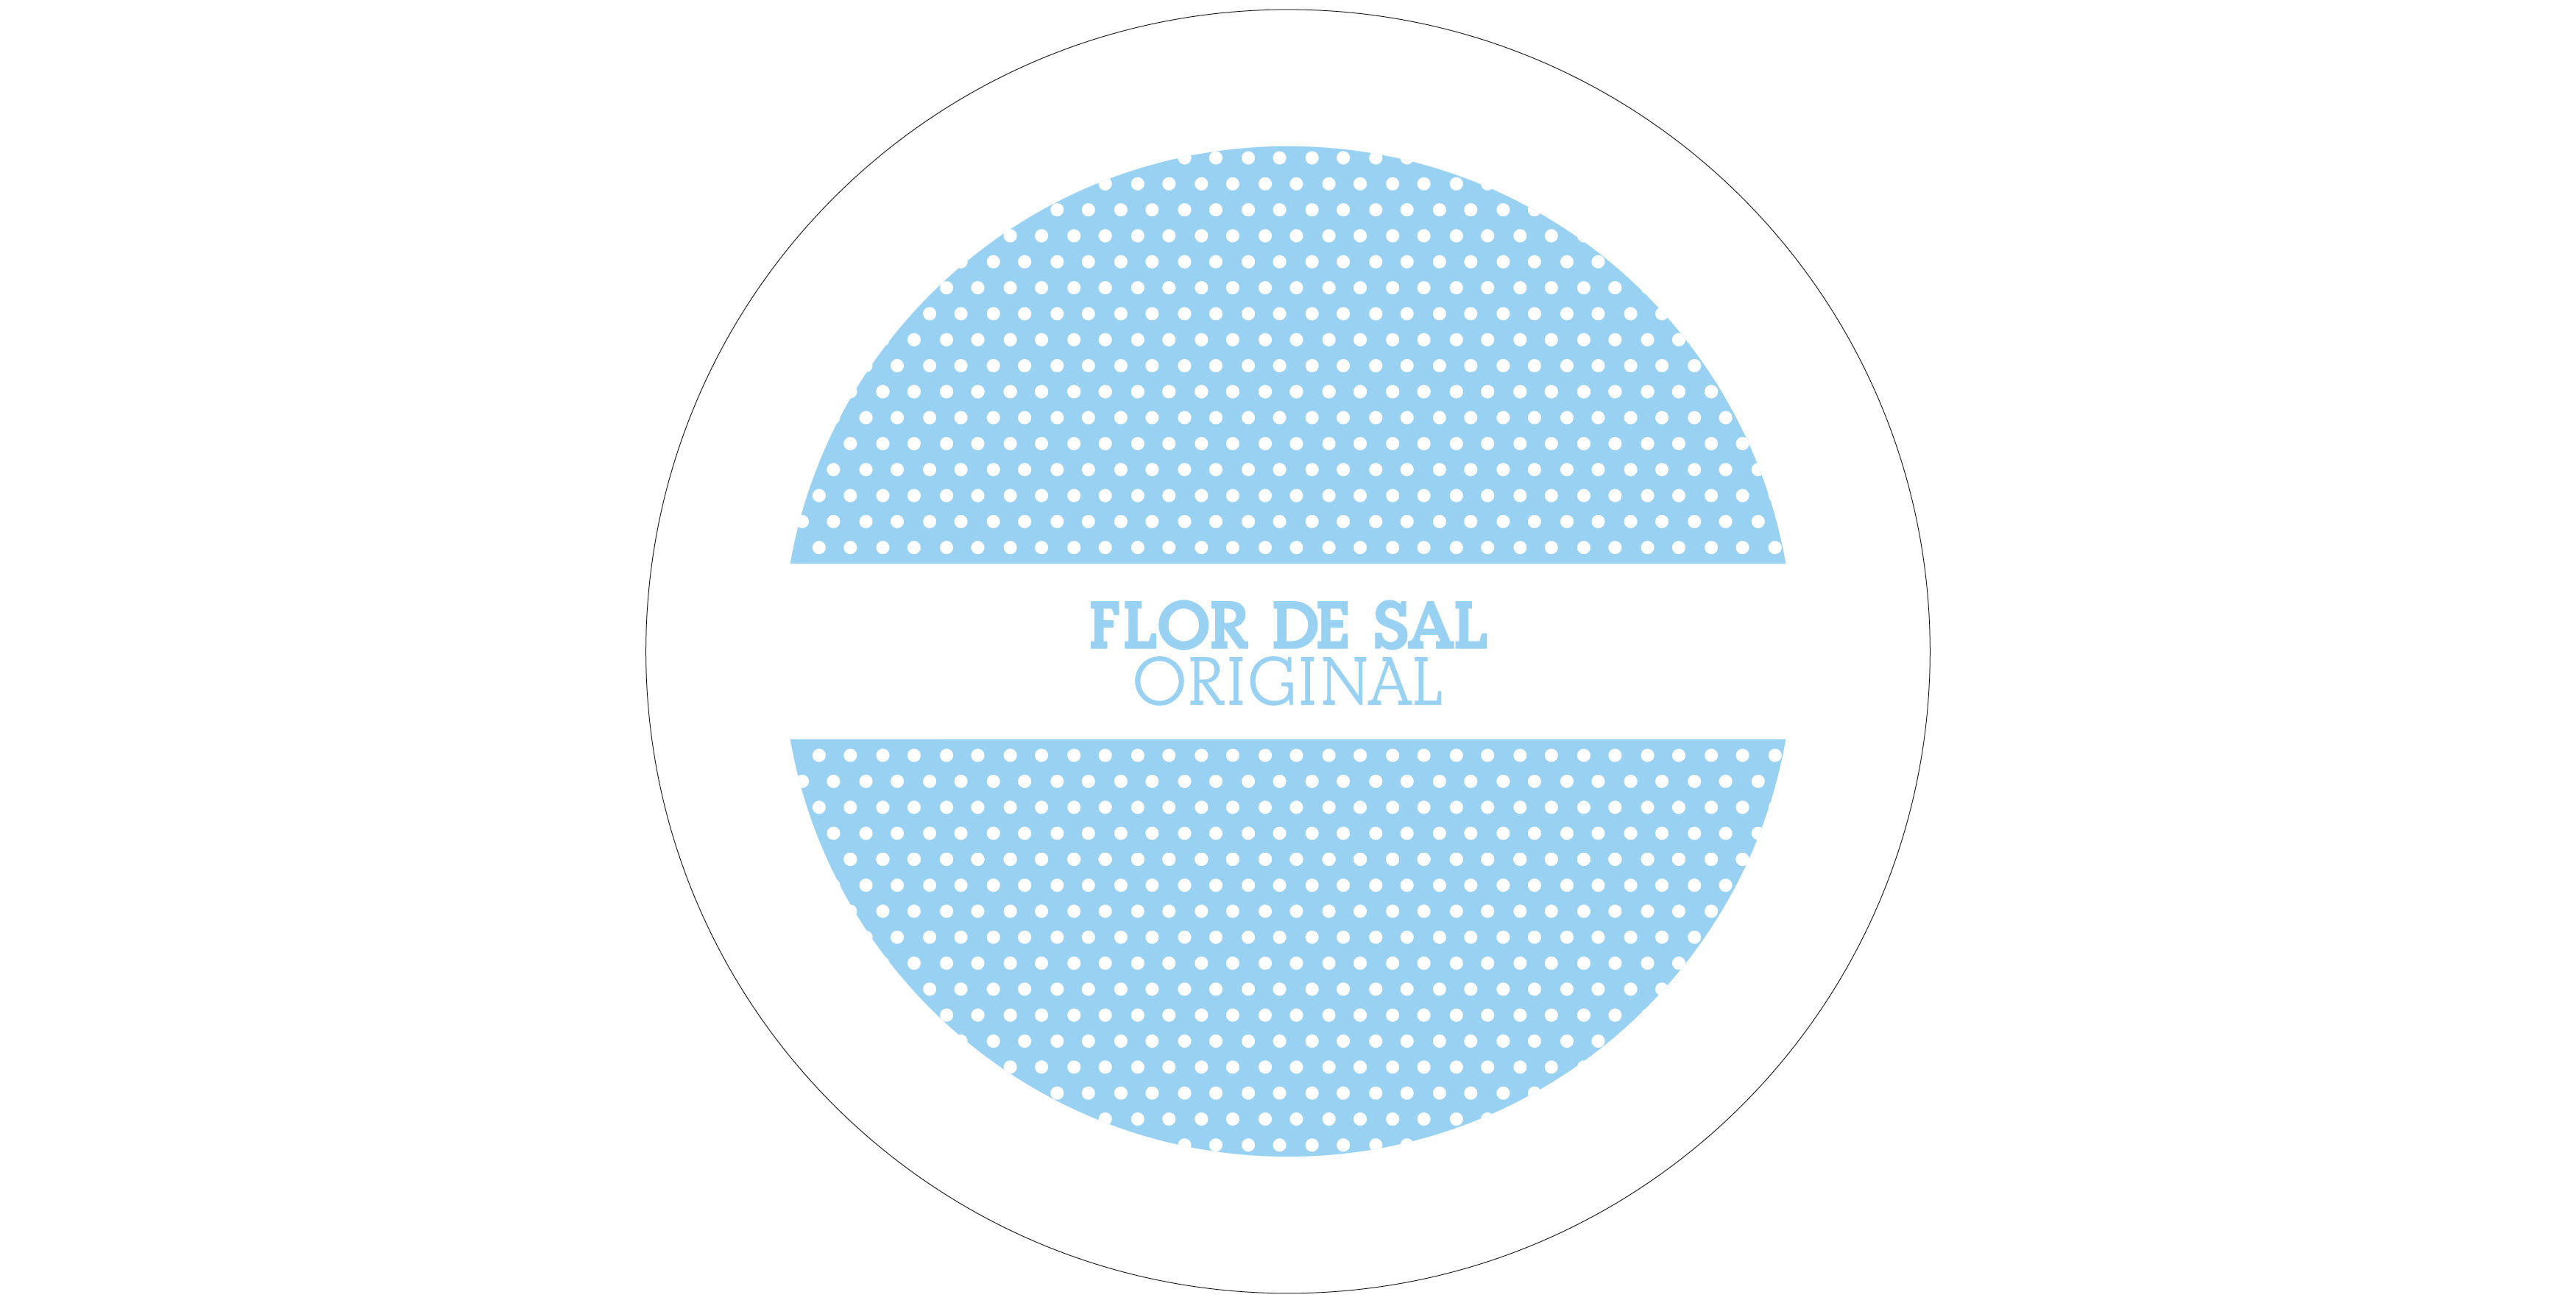 flor de sal packaging